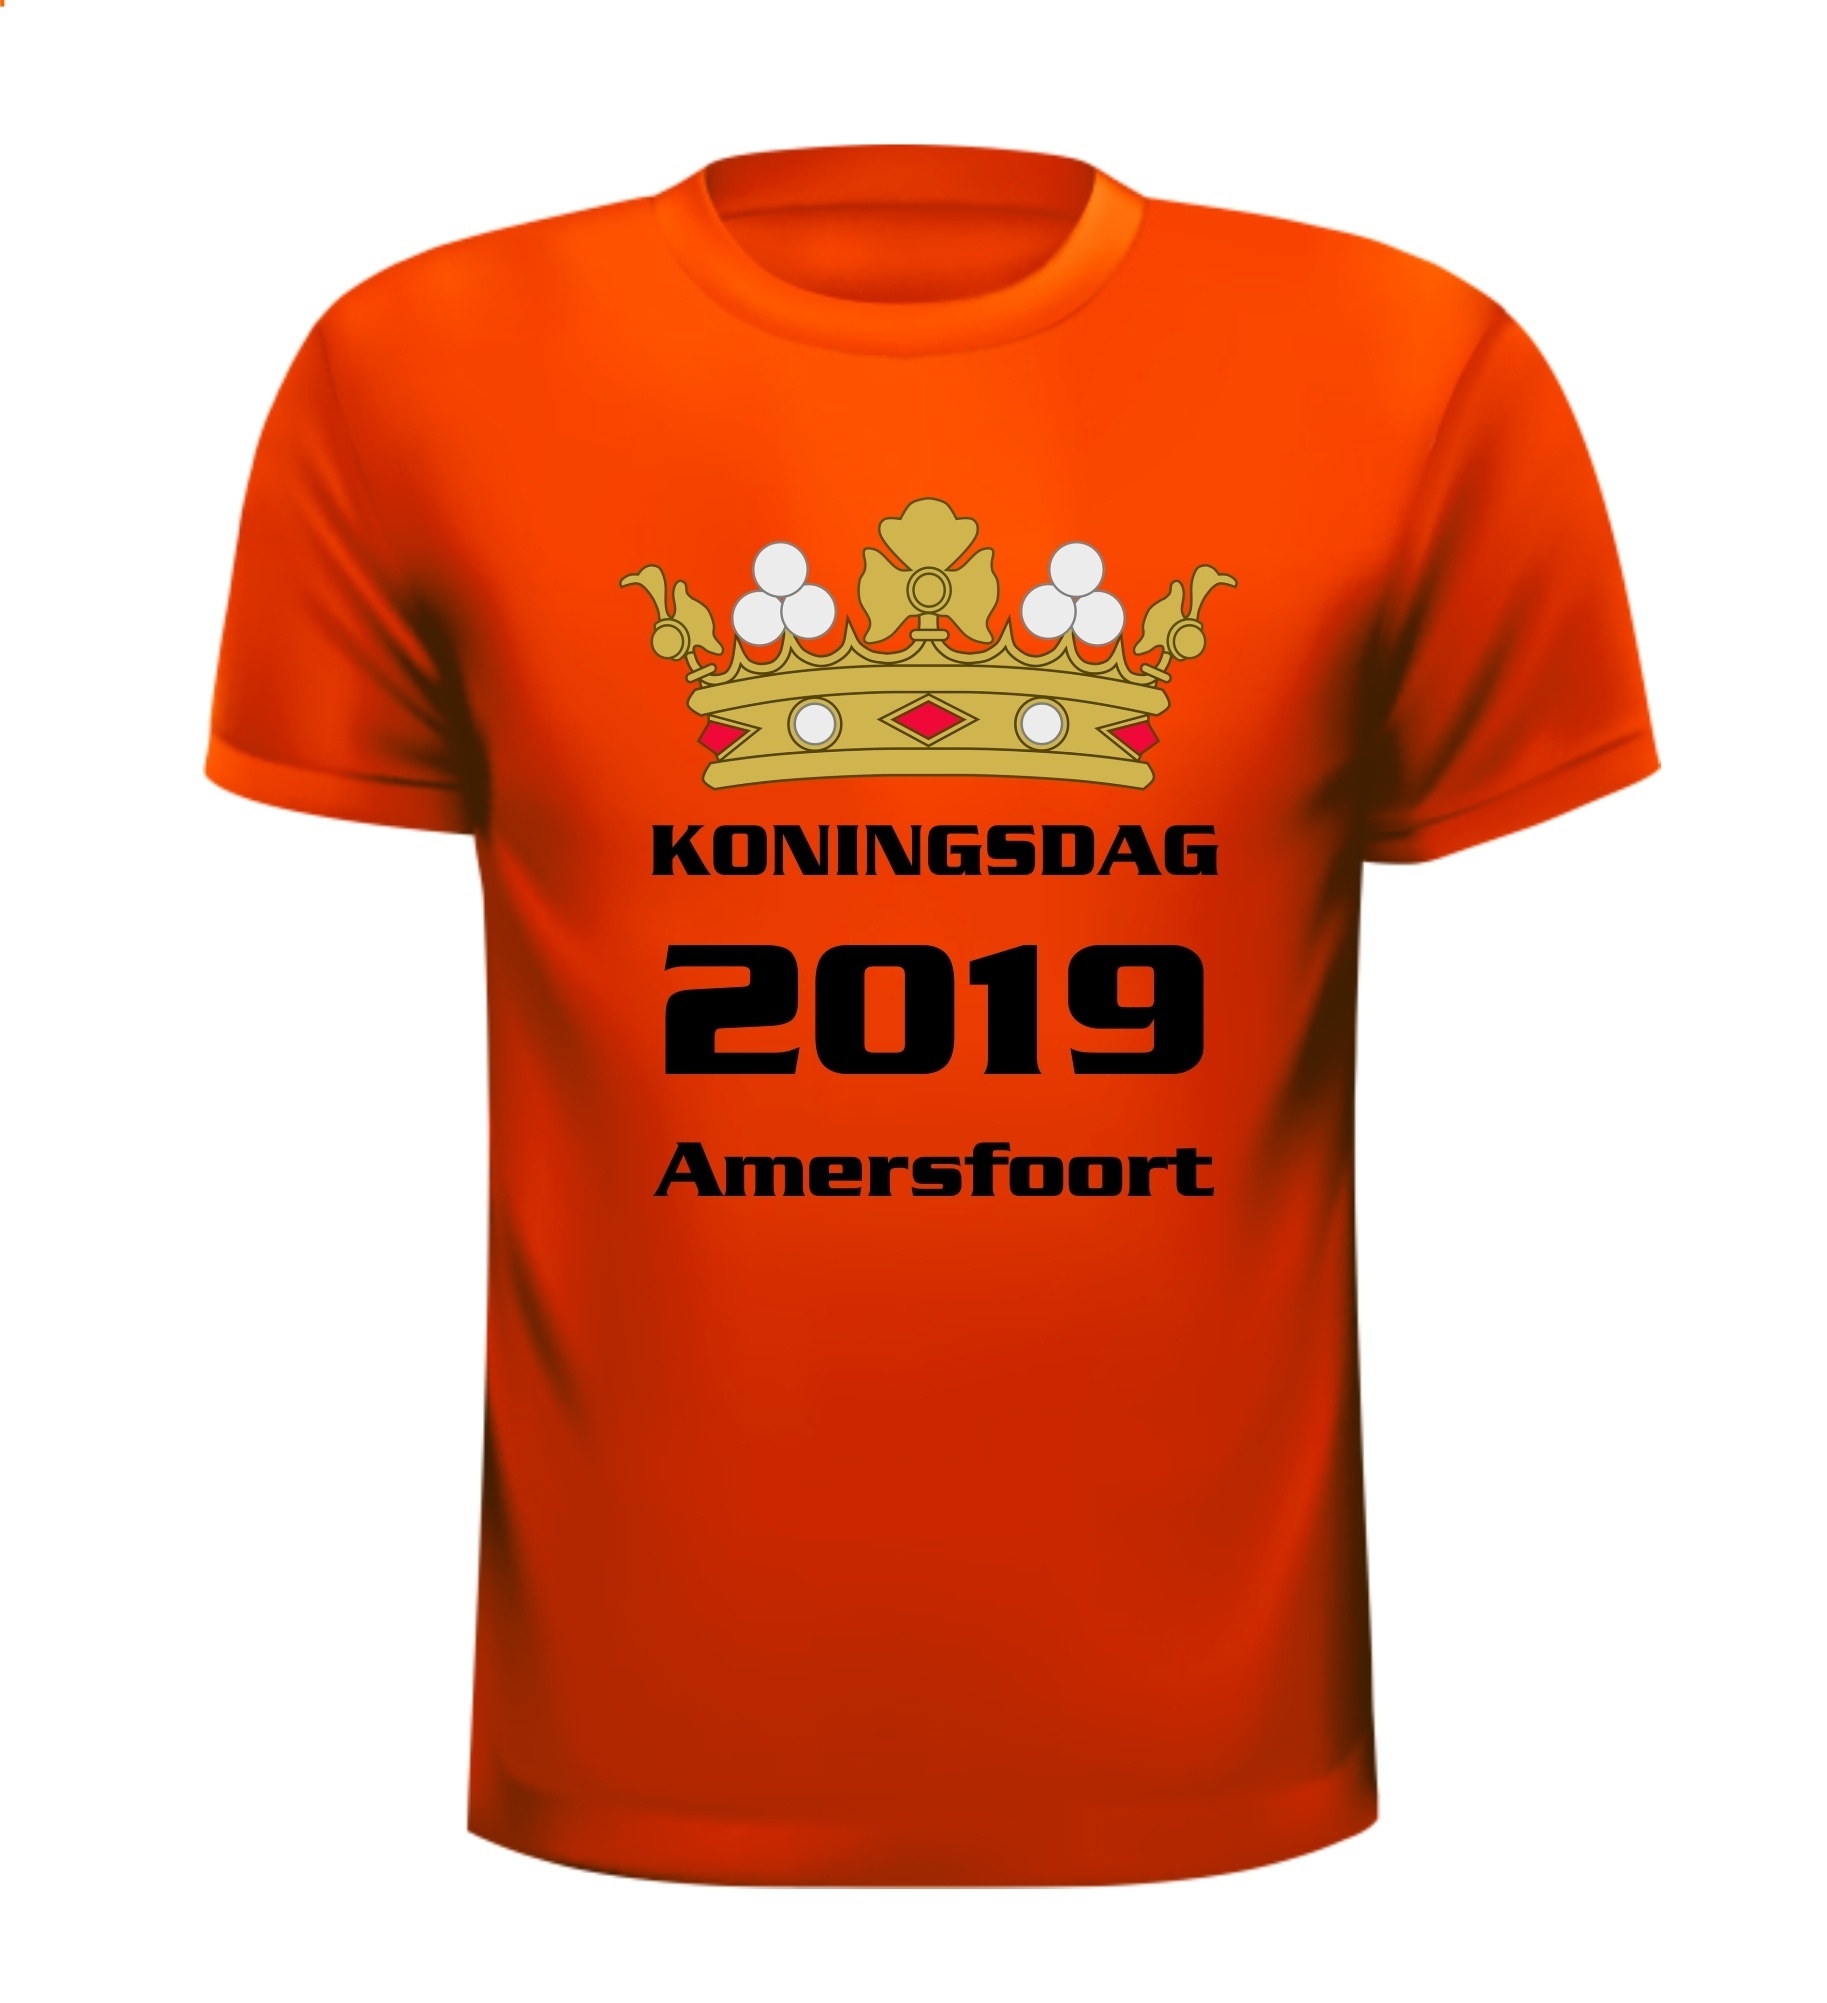 Koningsdag 2019 Amersfoort T-shirt feest oranje